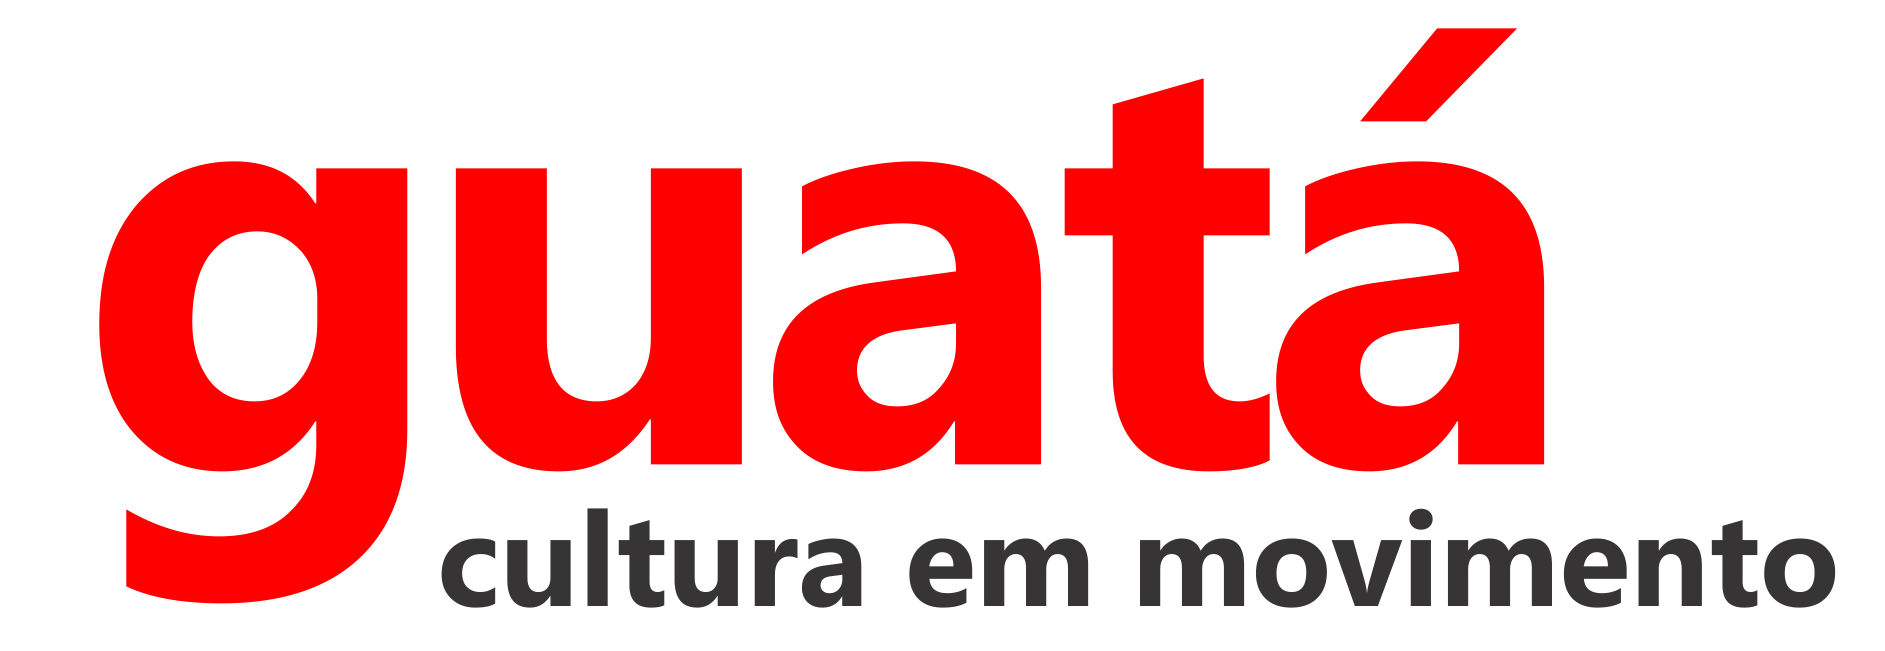 Guata 